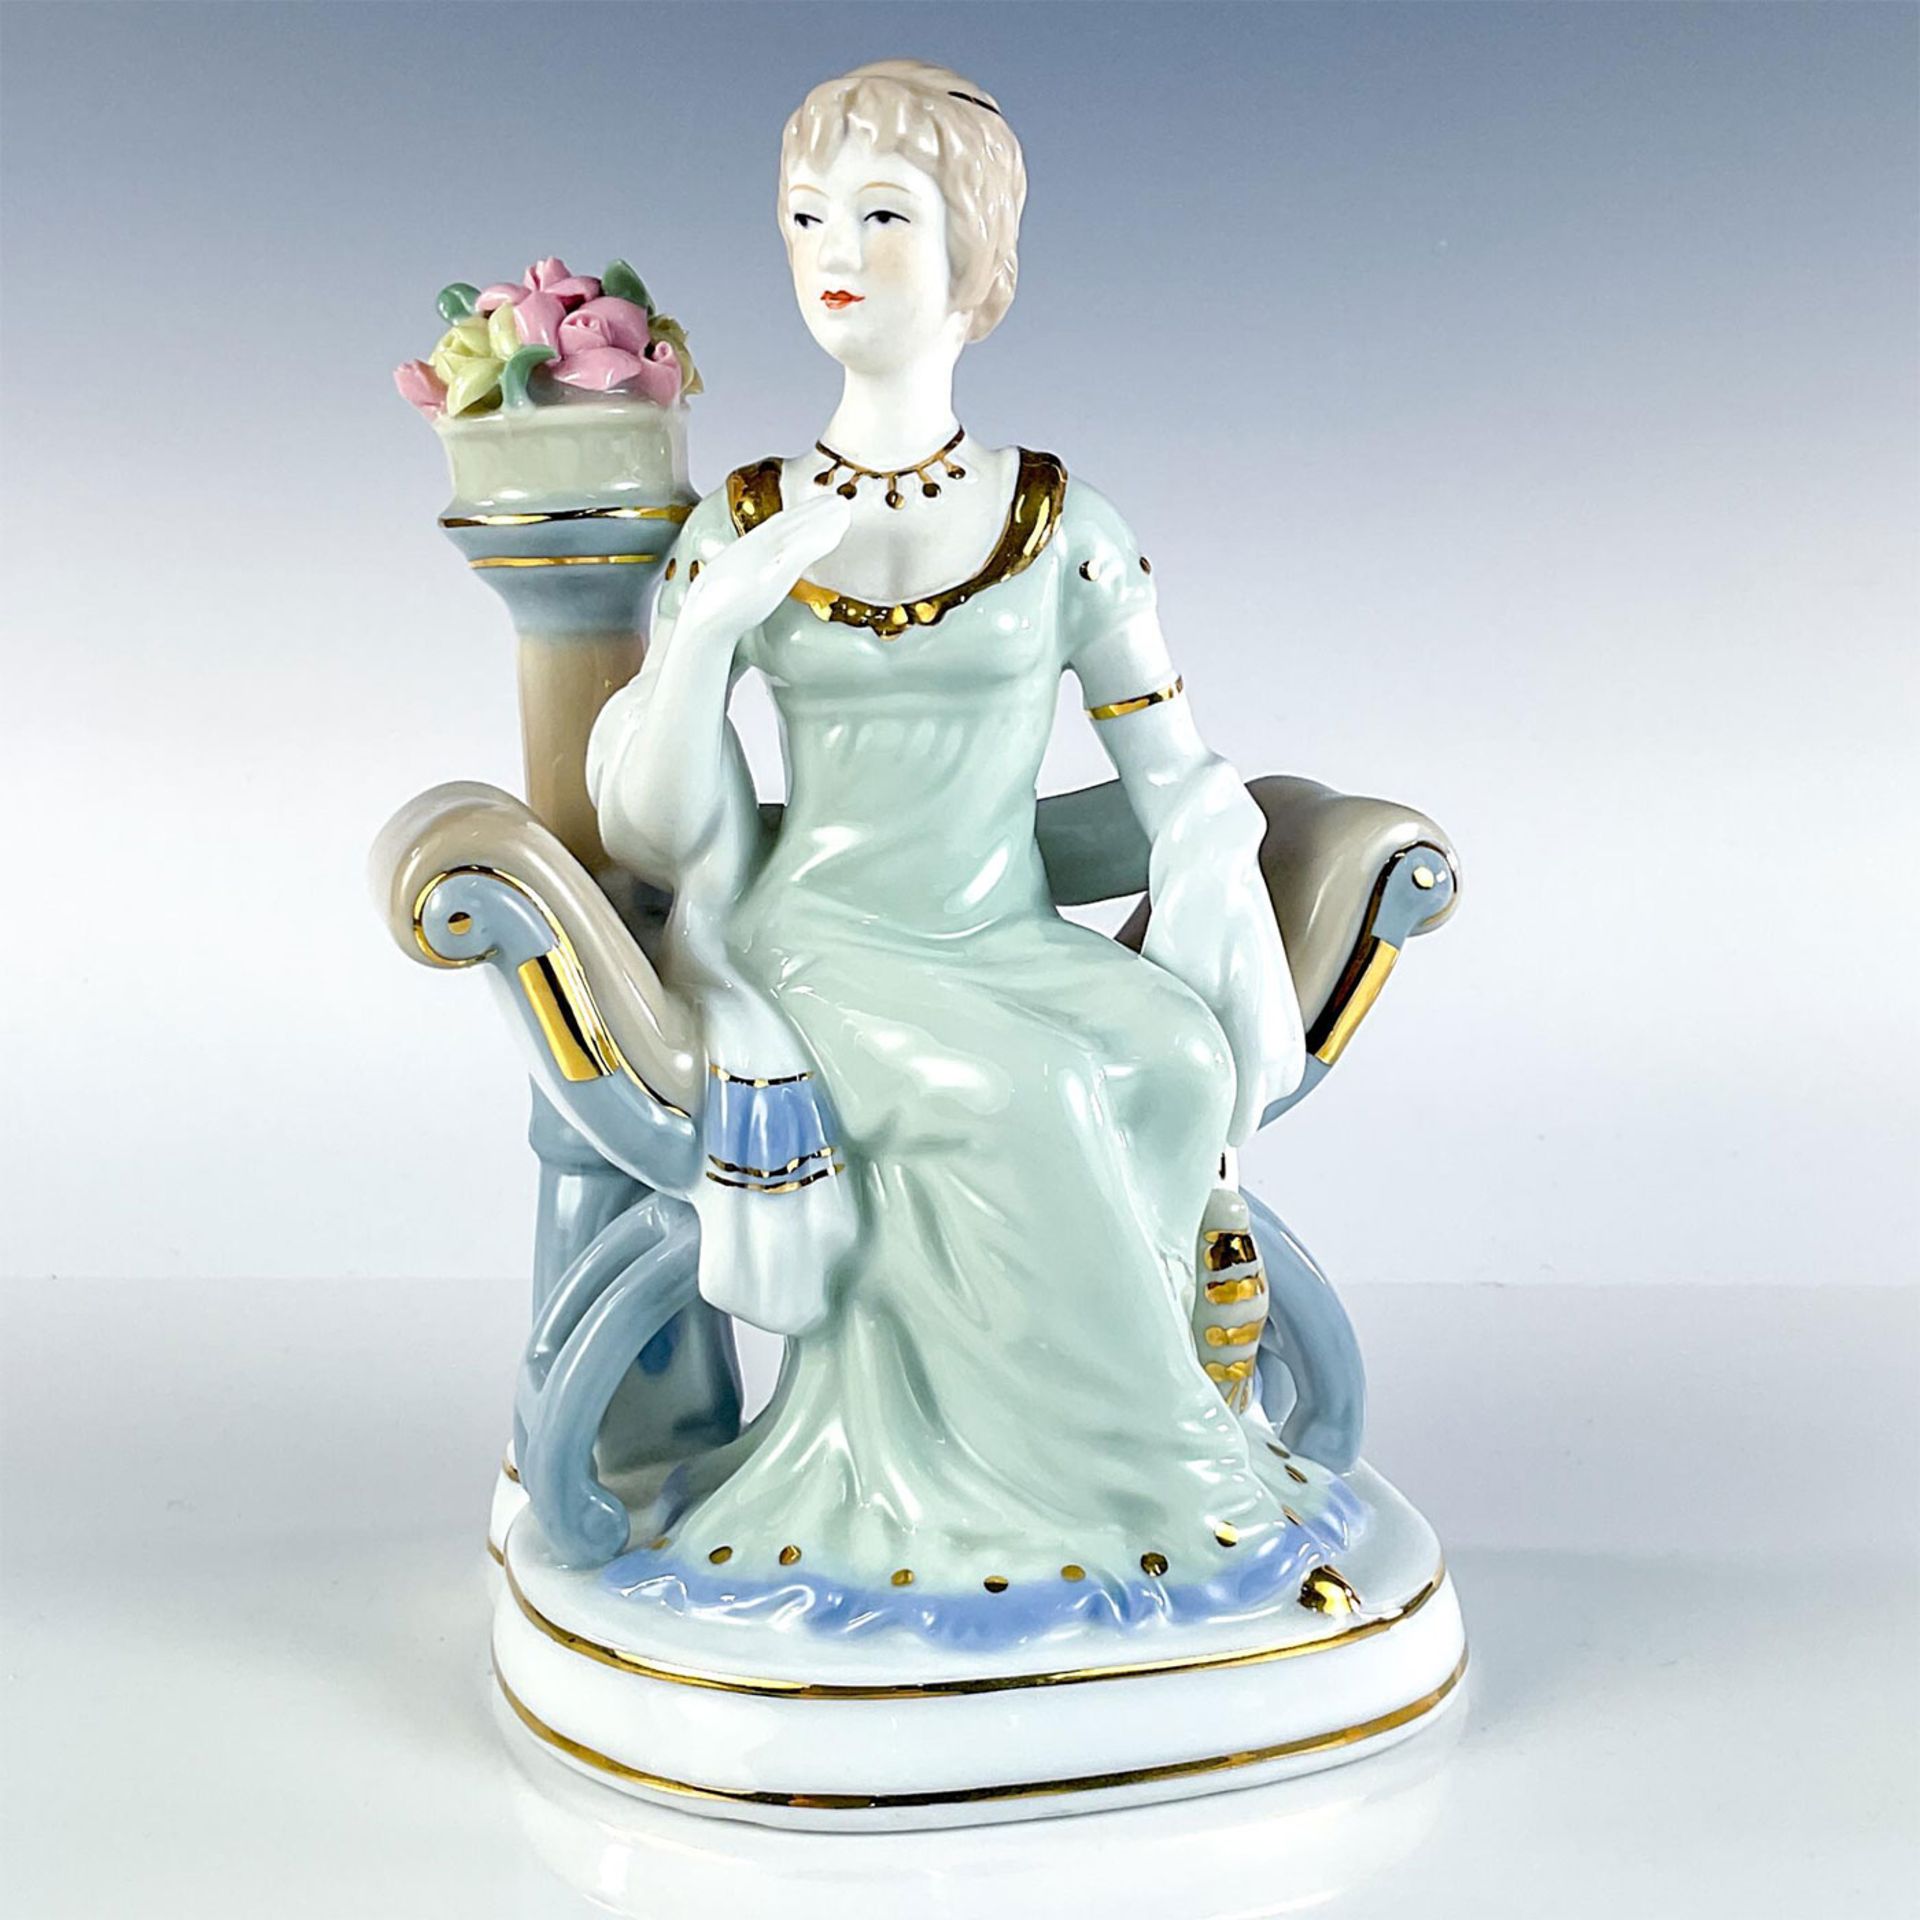 Vintage Porcelain Lady Figurine, Sophia